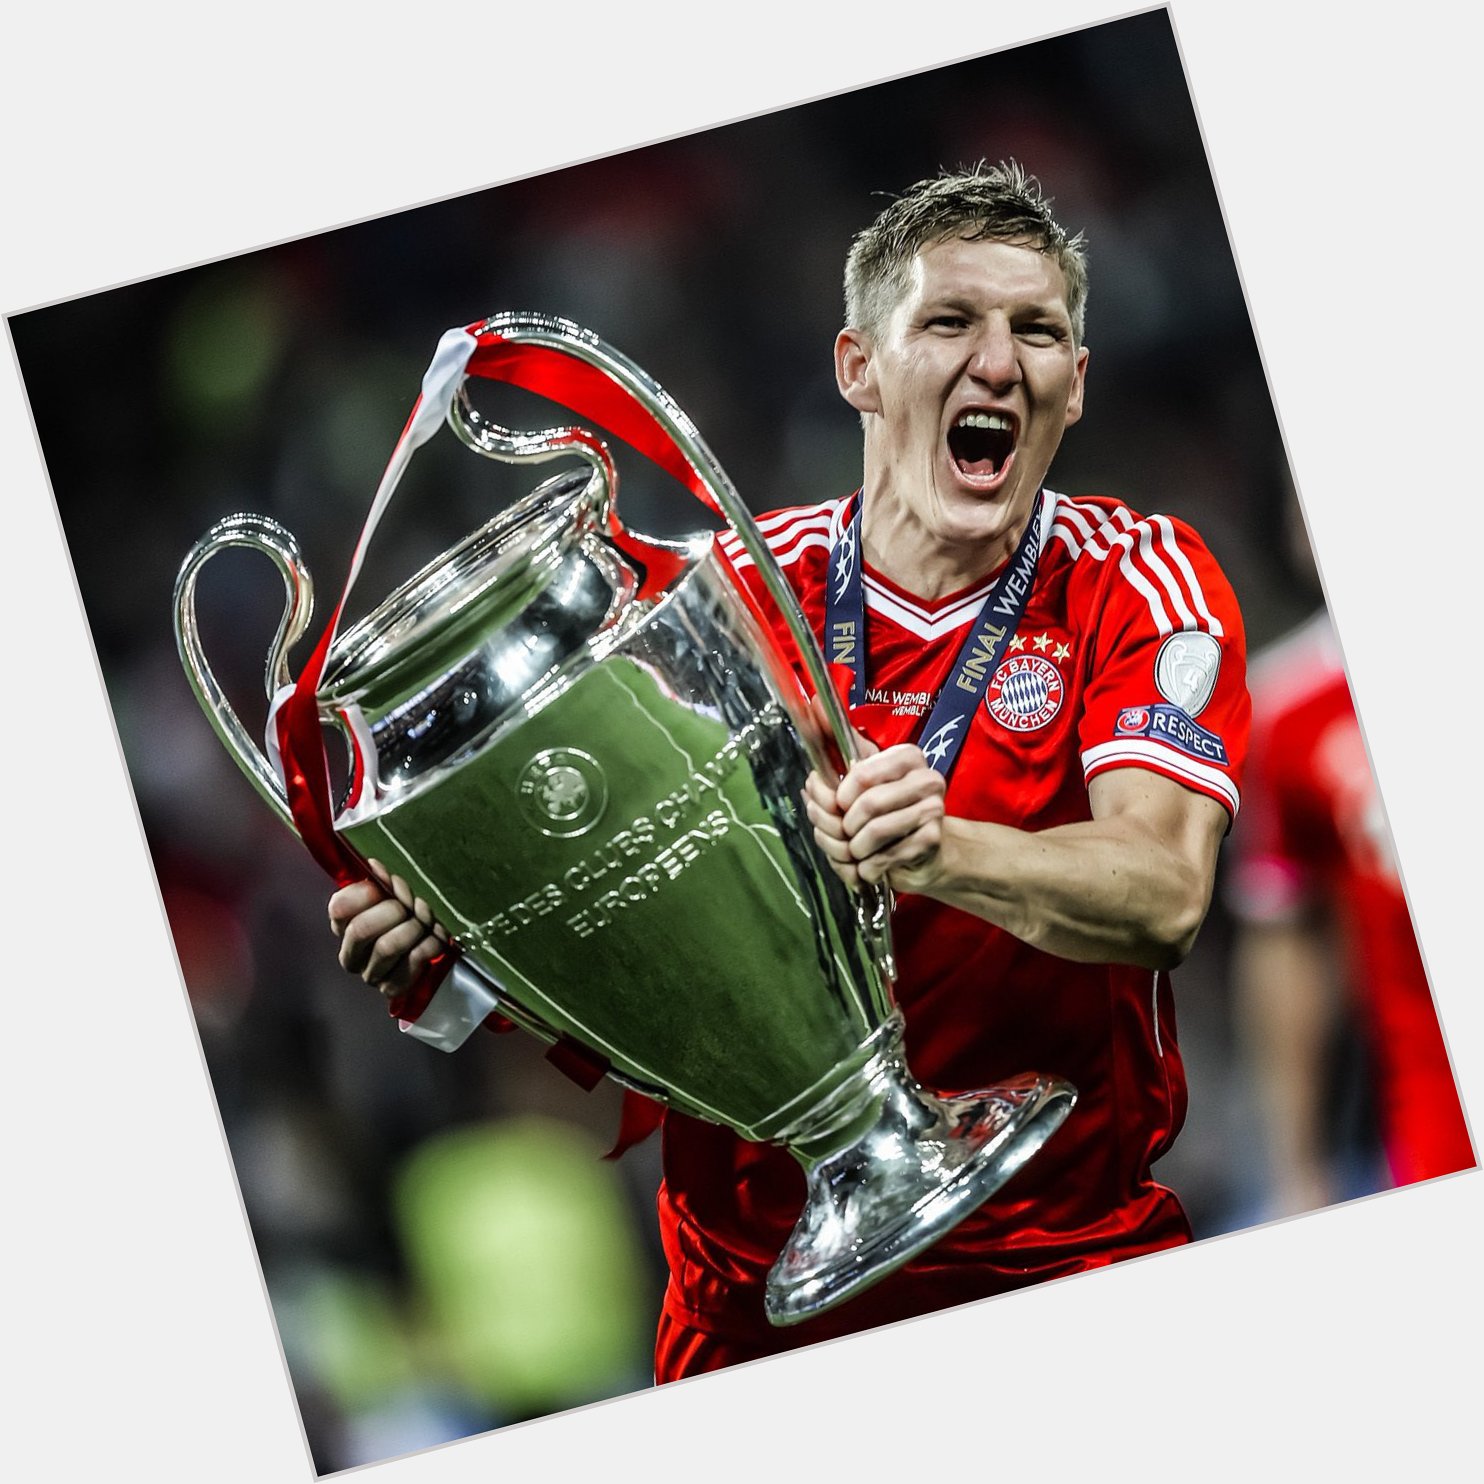 Happy 38th birthday, Bastian Schweinsteiger! 